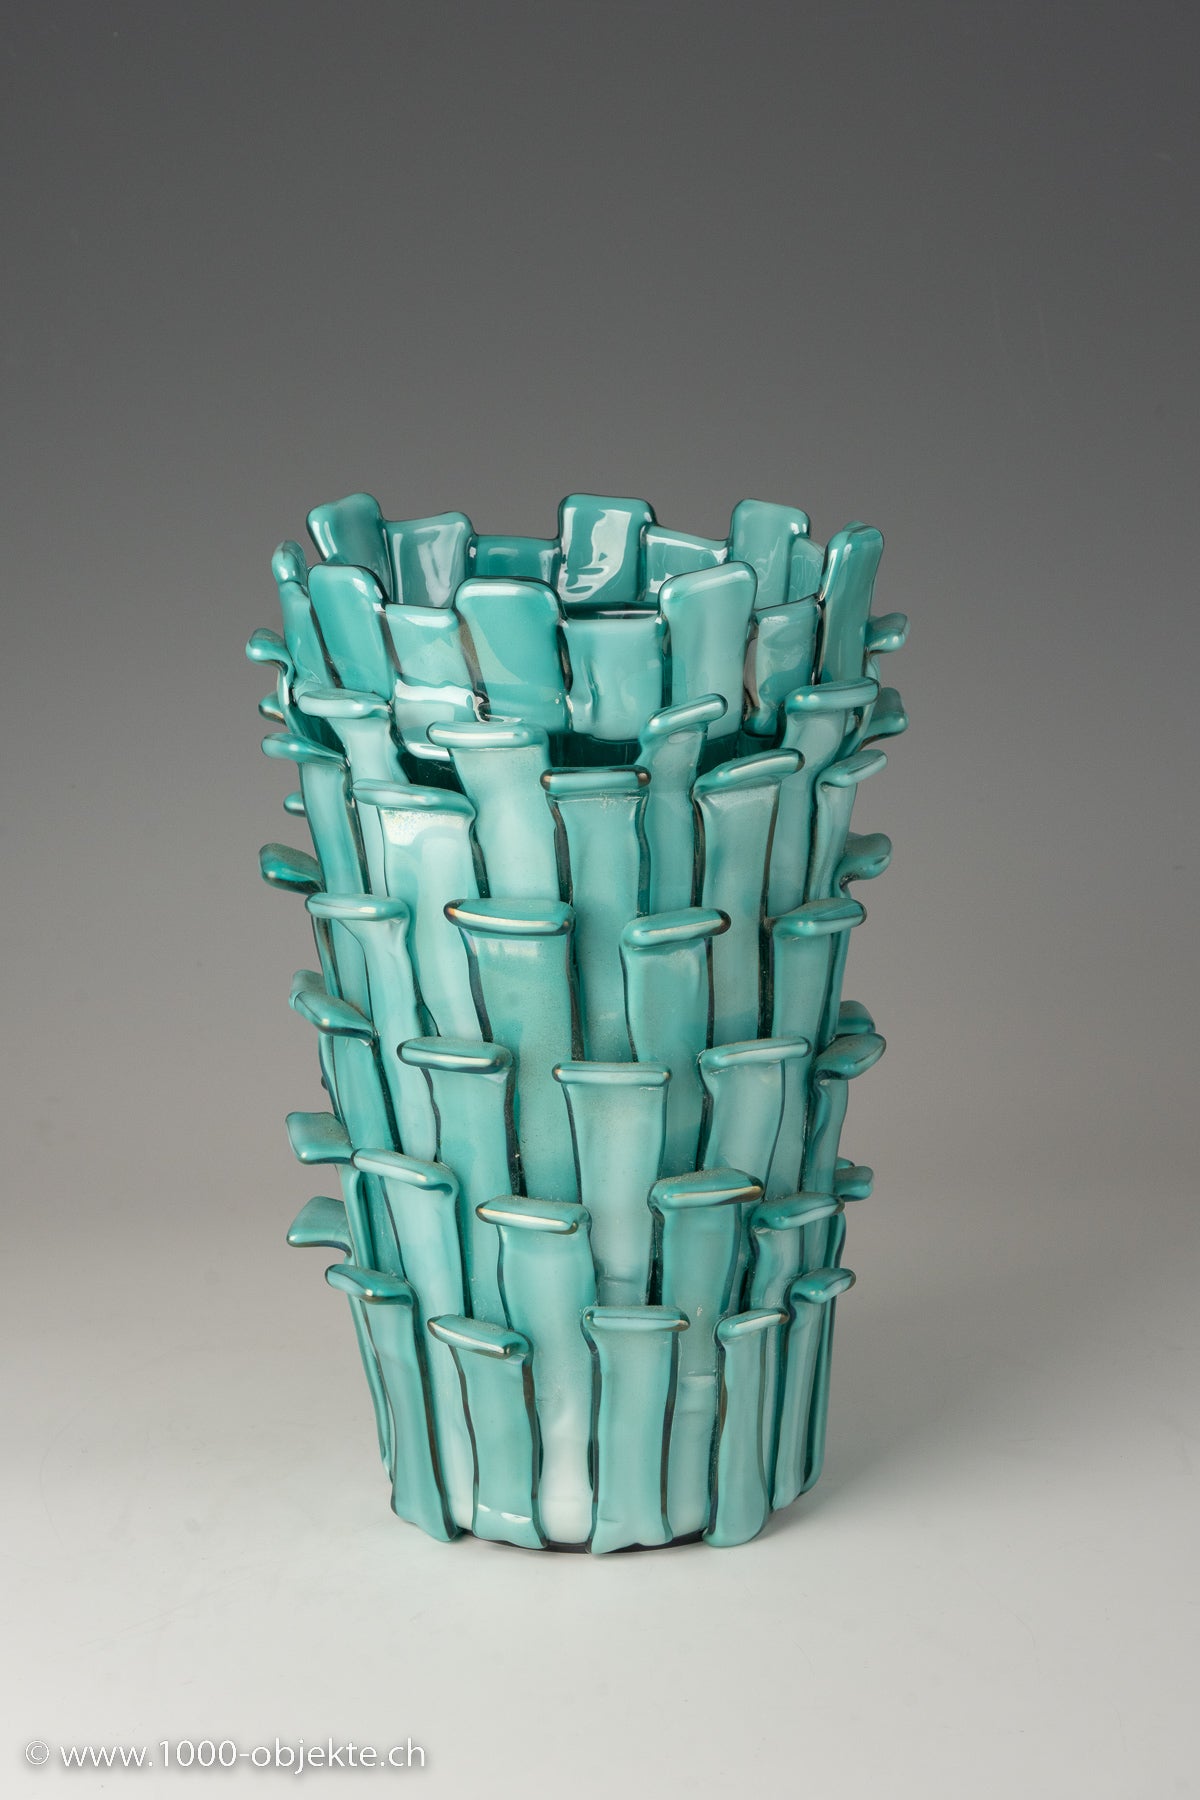 Vintage "Ritagli vase" by Fulvio Bianconi for Venini, 1993 limited edition